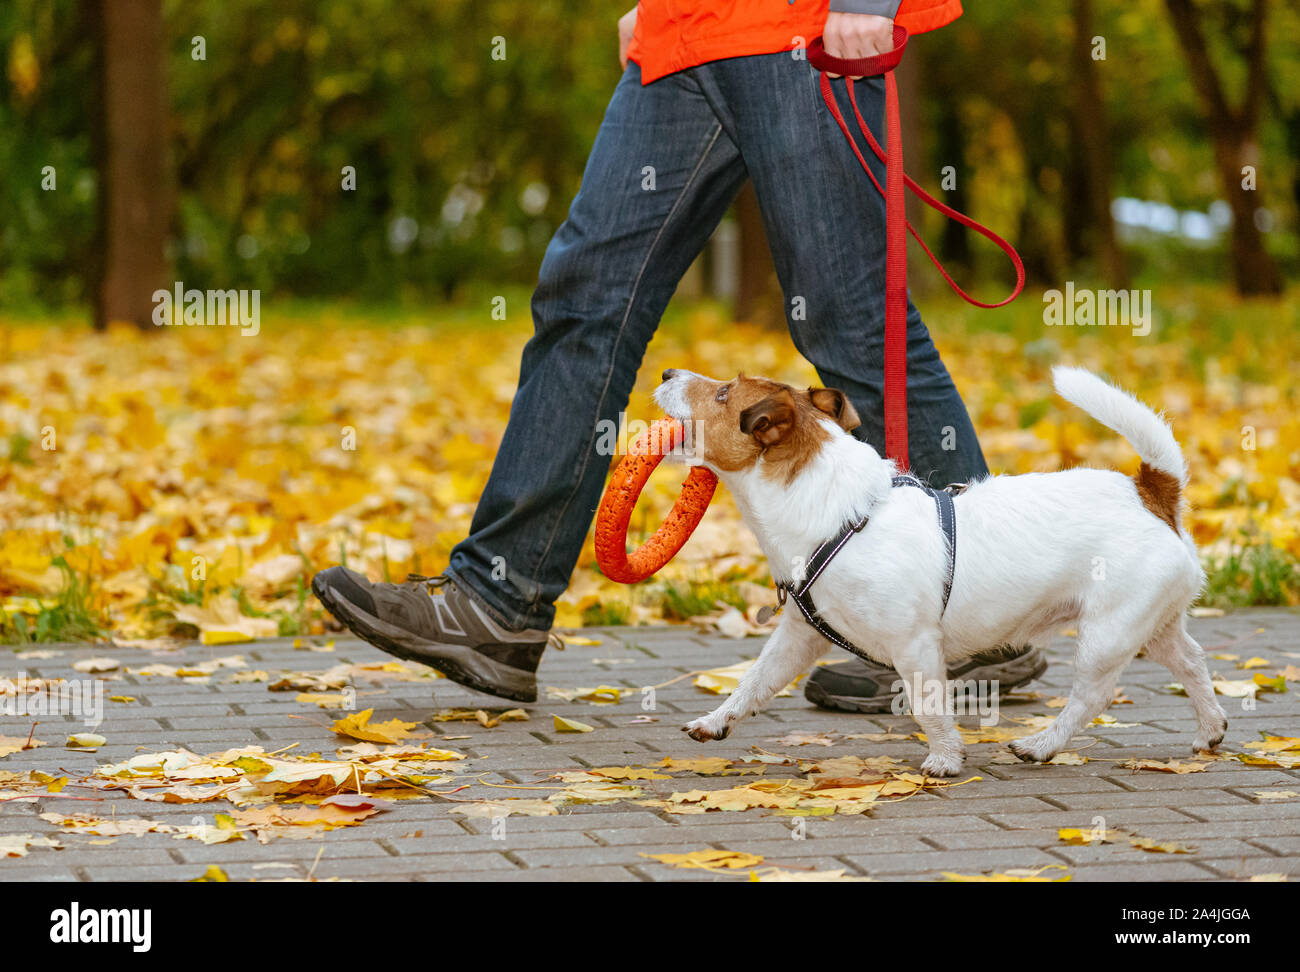 Promenade de chiens en laisse dans le parc automne holding orange jouet en bouche Banque D'Images